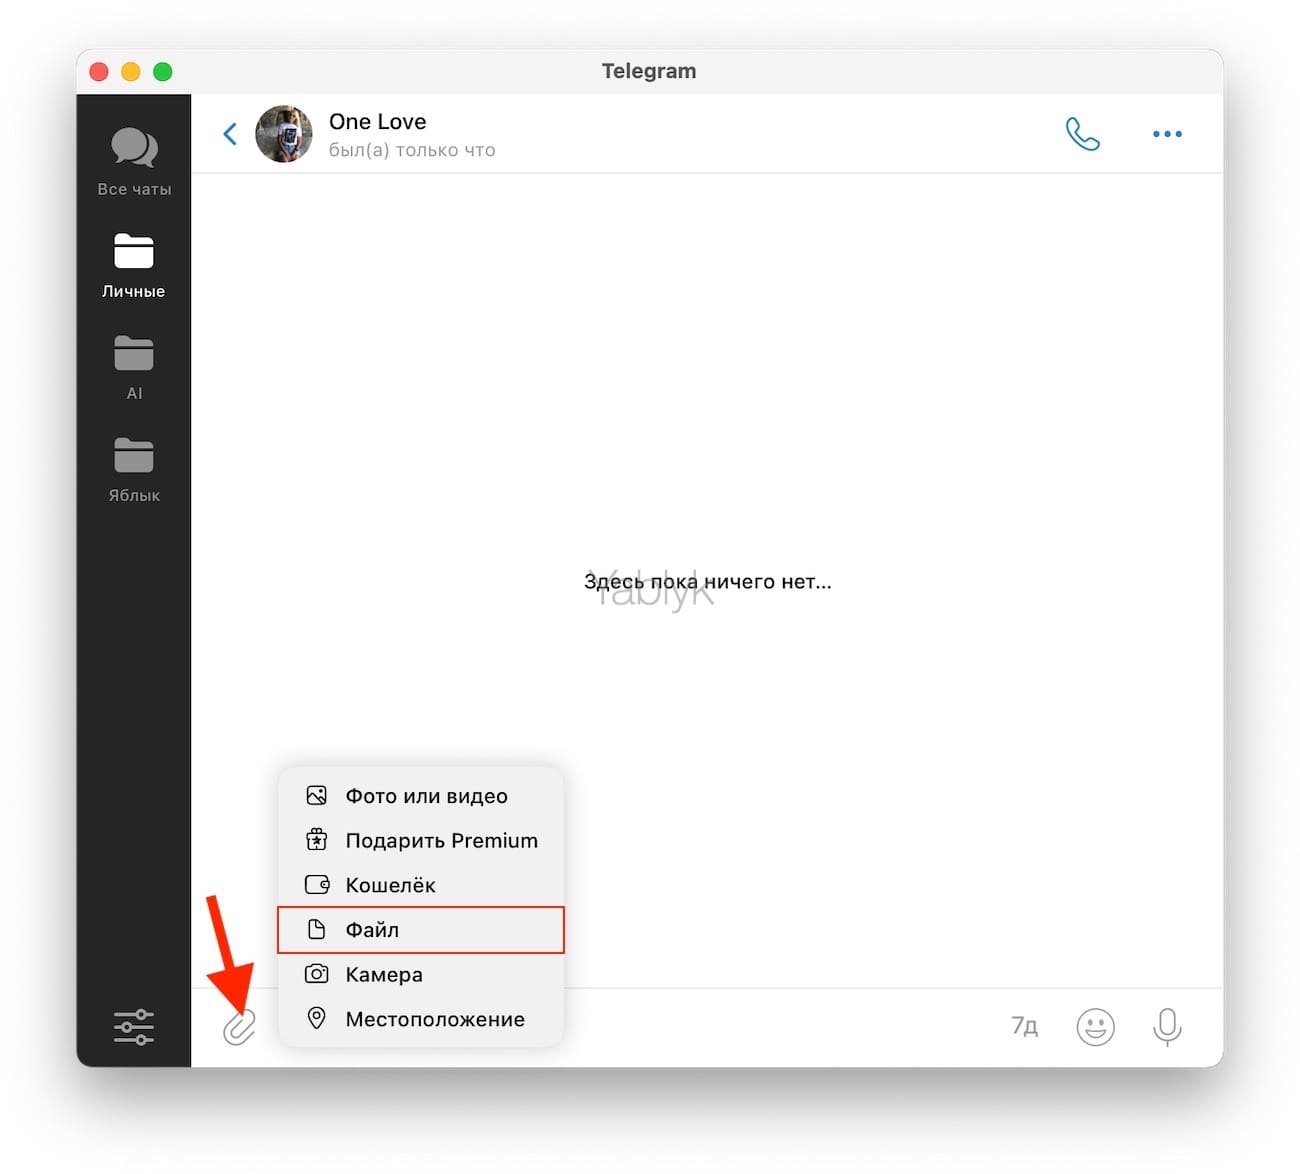 Как передать файл с Мака на Мак при помощи мессенджеров (Telegram, WhatsApp, Viber, iMessage и т.д.)